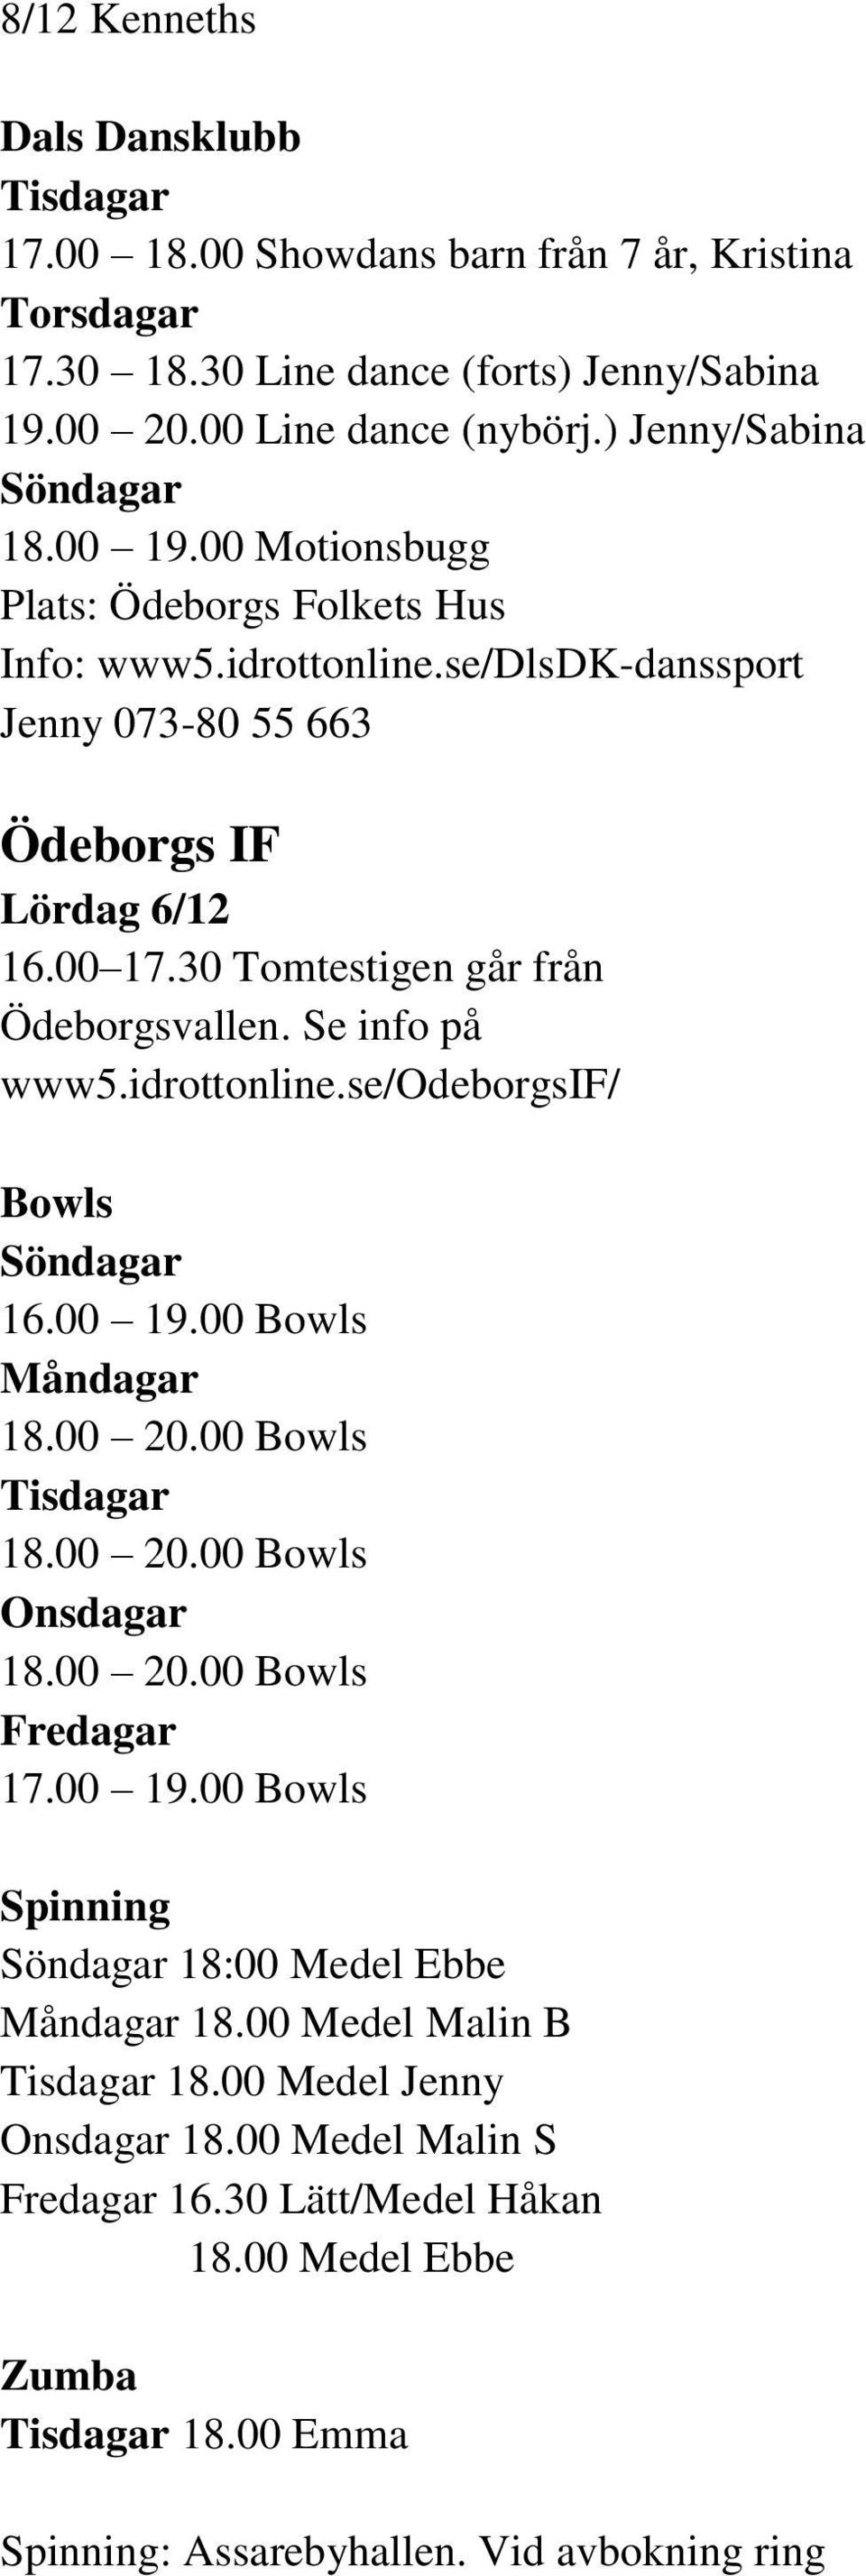 Se info på www5.idrottonline.se/odeborgsif/ Bowls Söndagar 16.00 19.00 Bowls Måndagar 18.00 20.00 Bowls Tisdagar 18.00 20.00 Bowls Onsdagar 18.00 20.00 Bowls Fredagar 17.00 19.00 Bowls Spinning Söndagar 18:00 Medel Ebbe Måndagar 18.